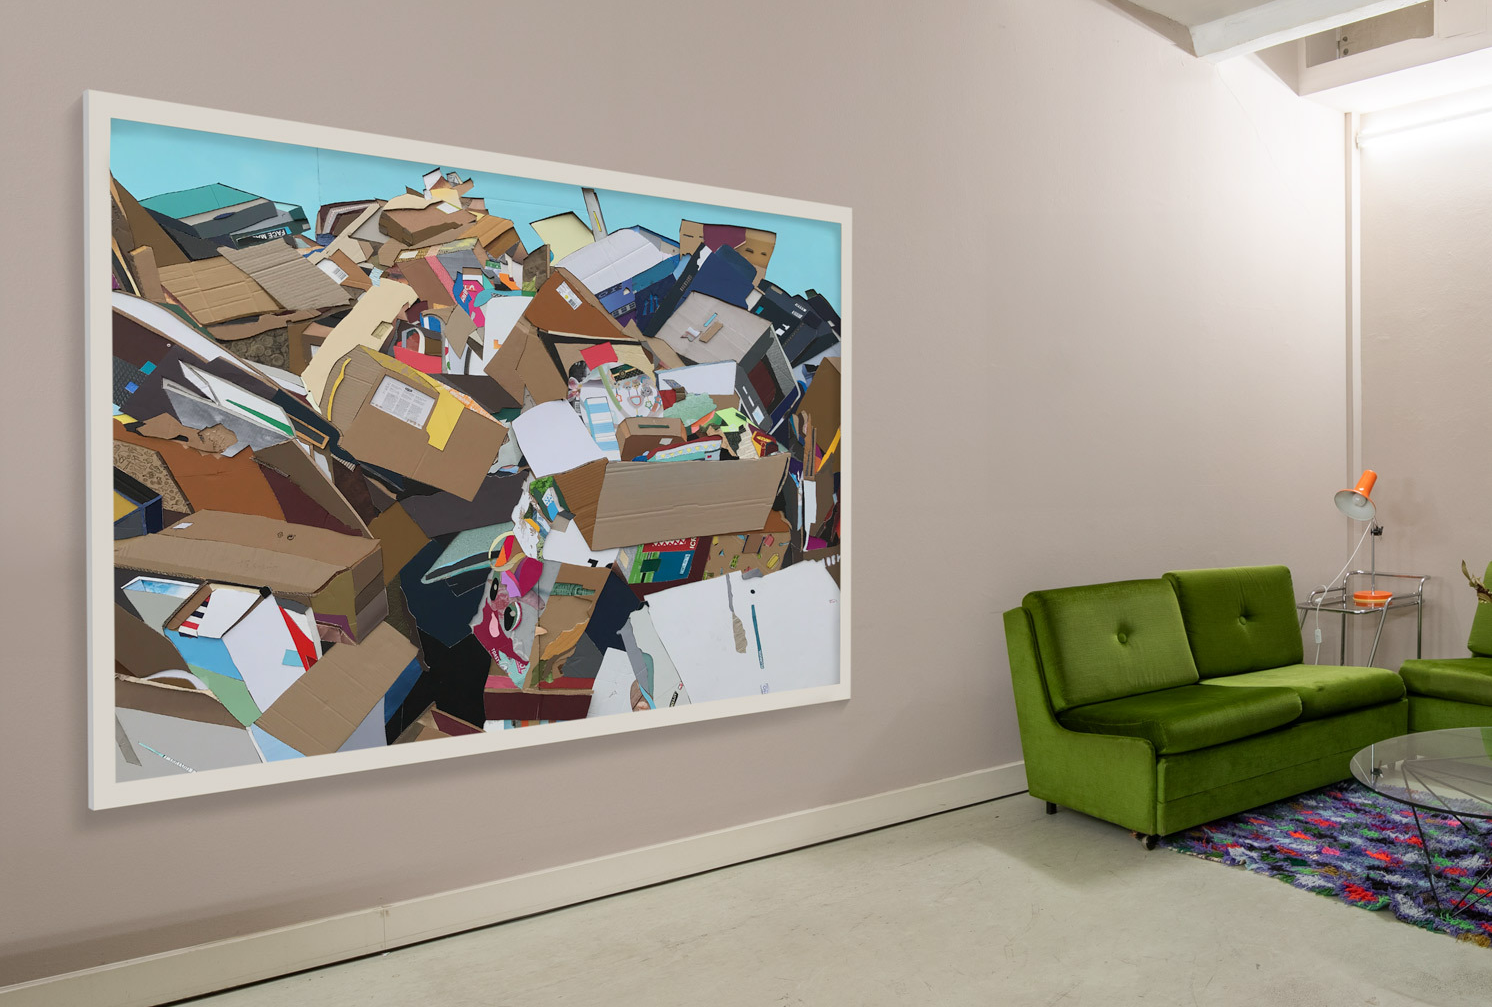 Bild von einem Büroraum mit einem Kunstwerk an der Wand